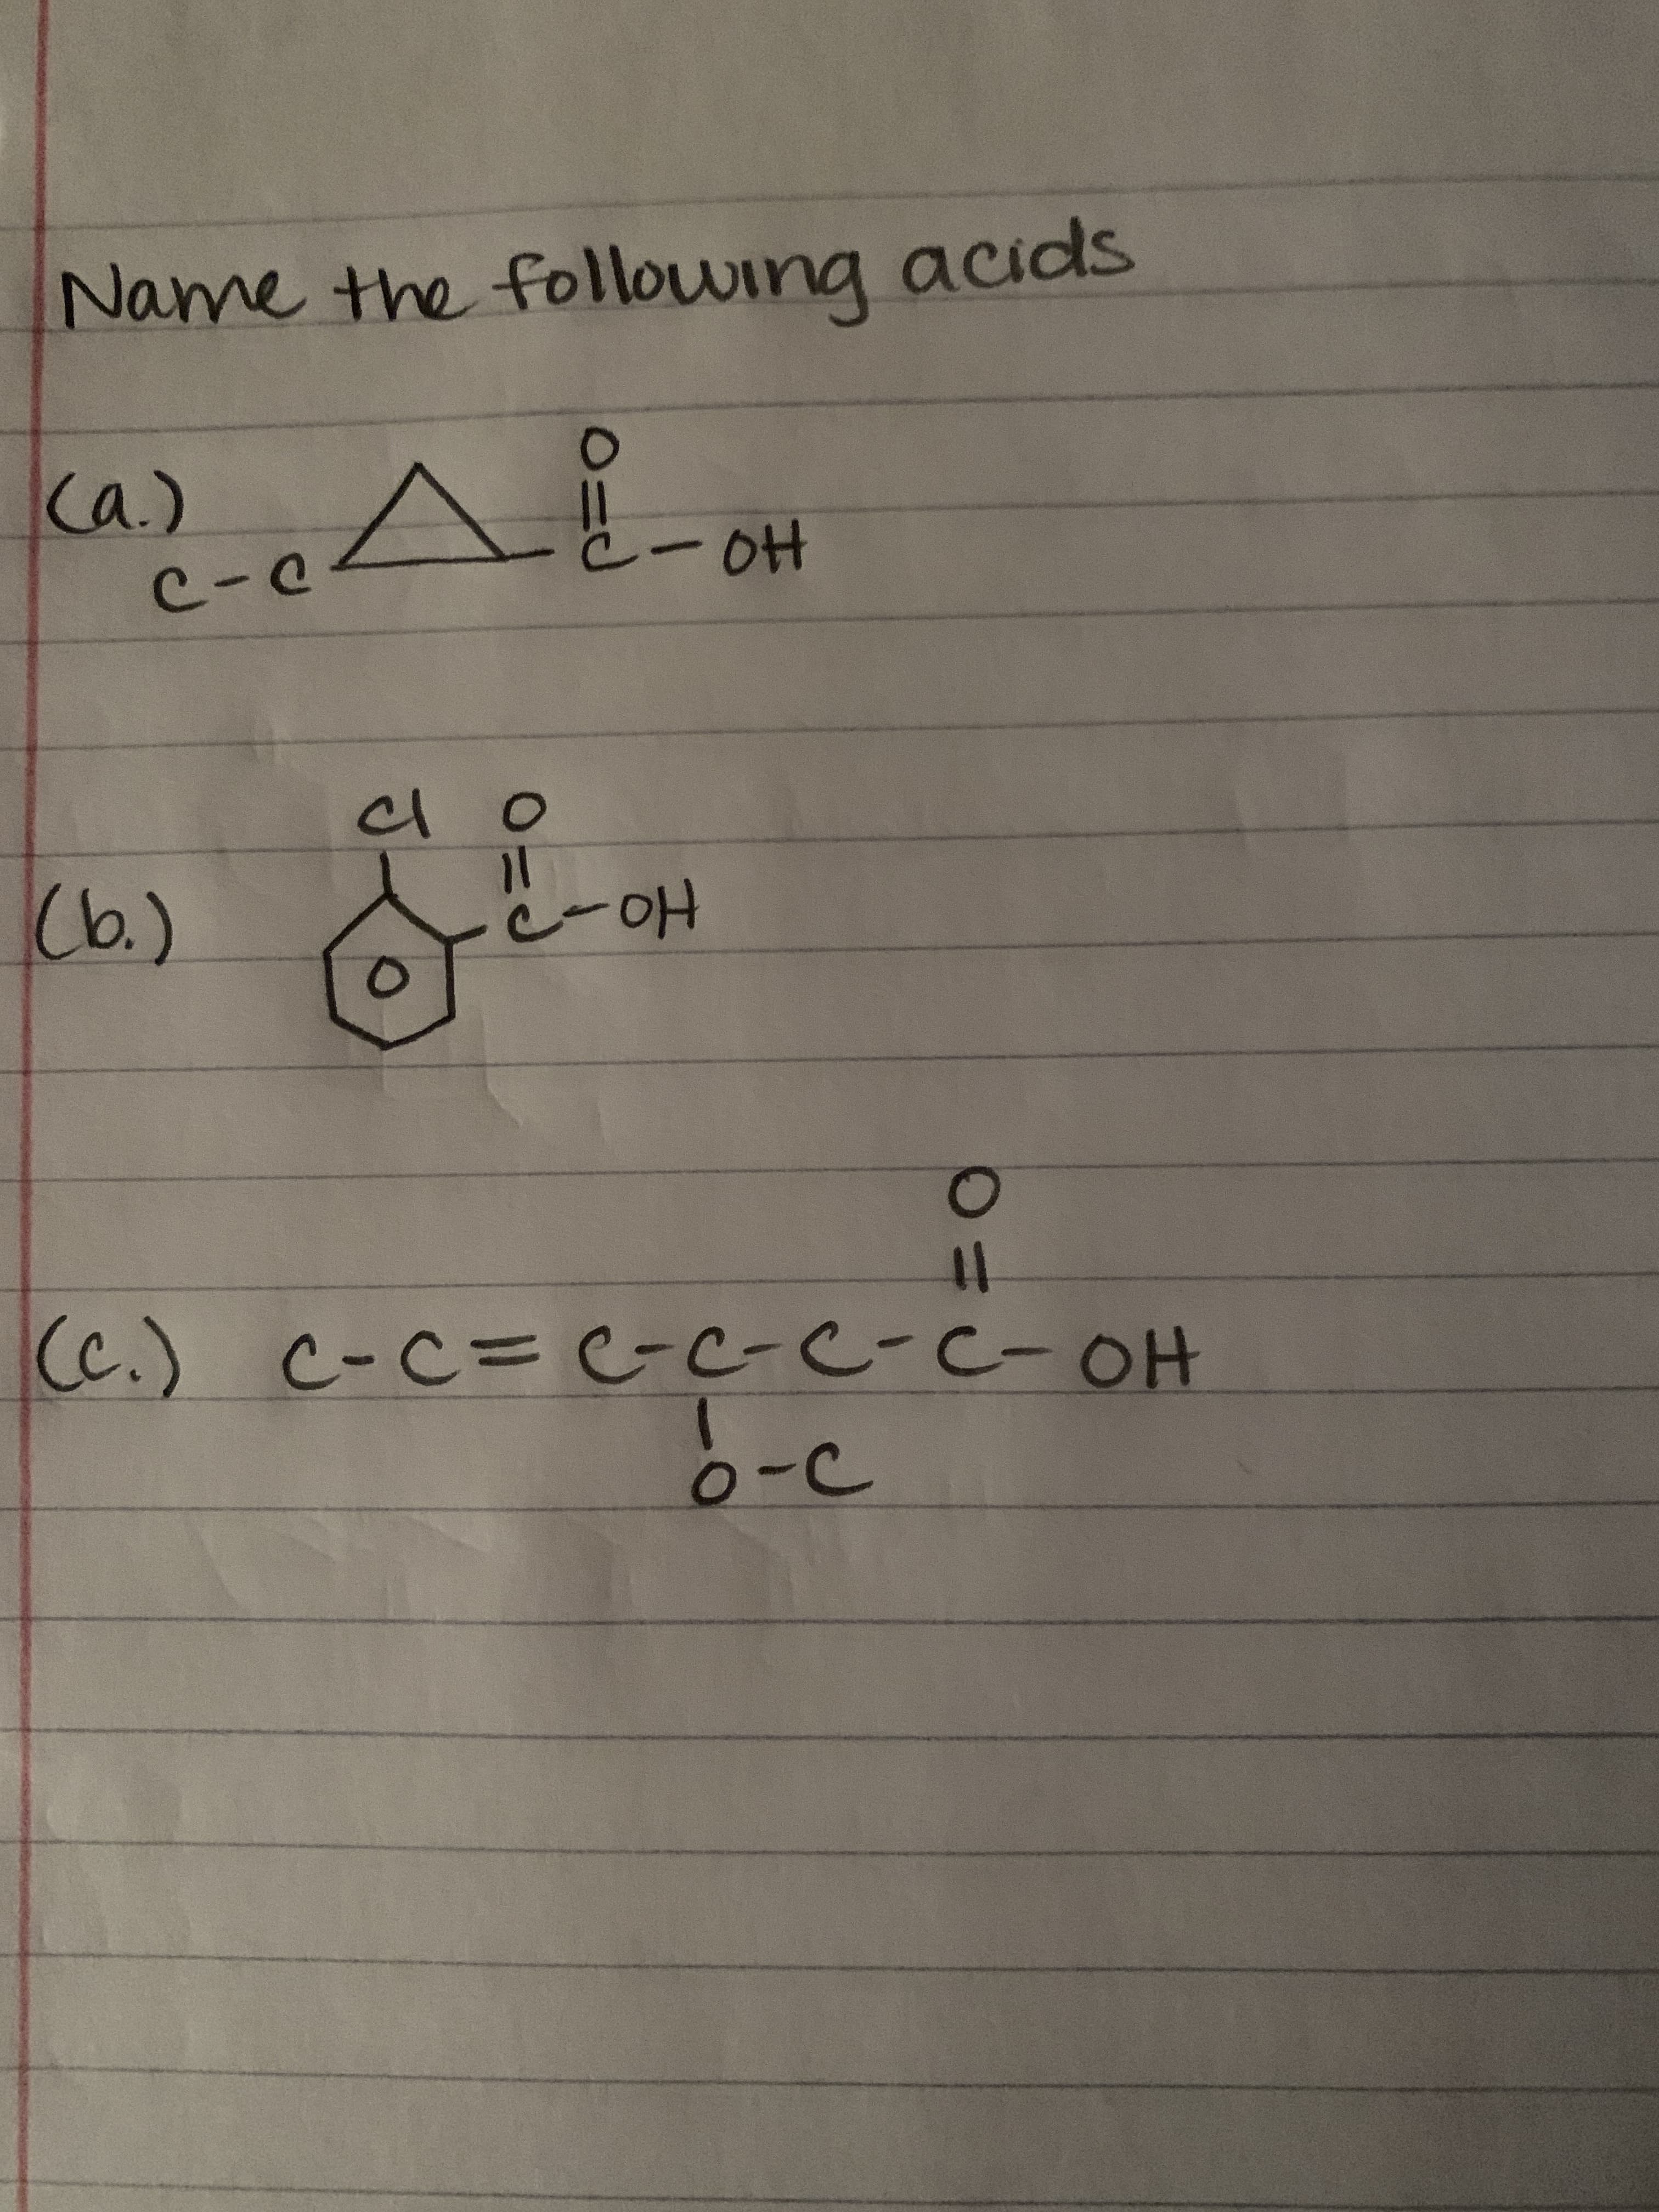 Name the following acids
Ca.)
C-C
-0H
(b.)
cl
11
Ho
%3D
(c.) c-C= GC-C-C-OH
o-c
